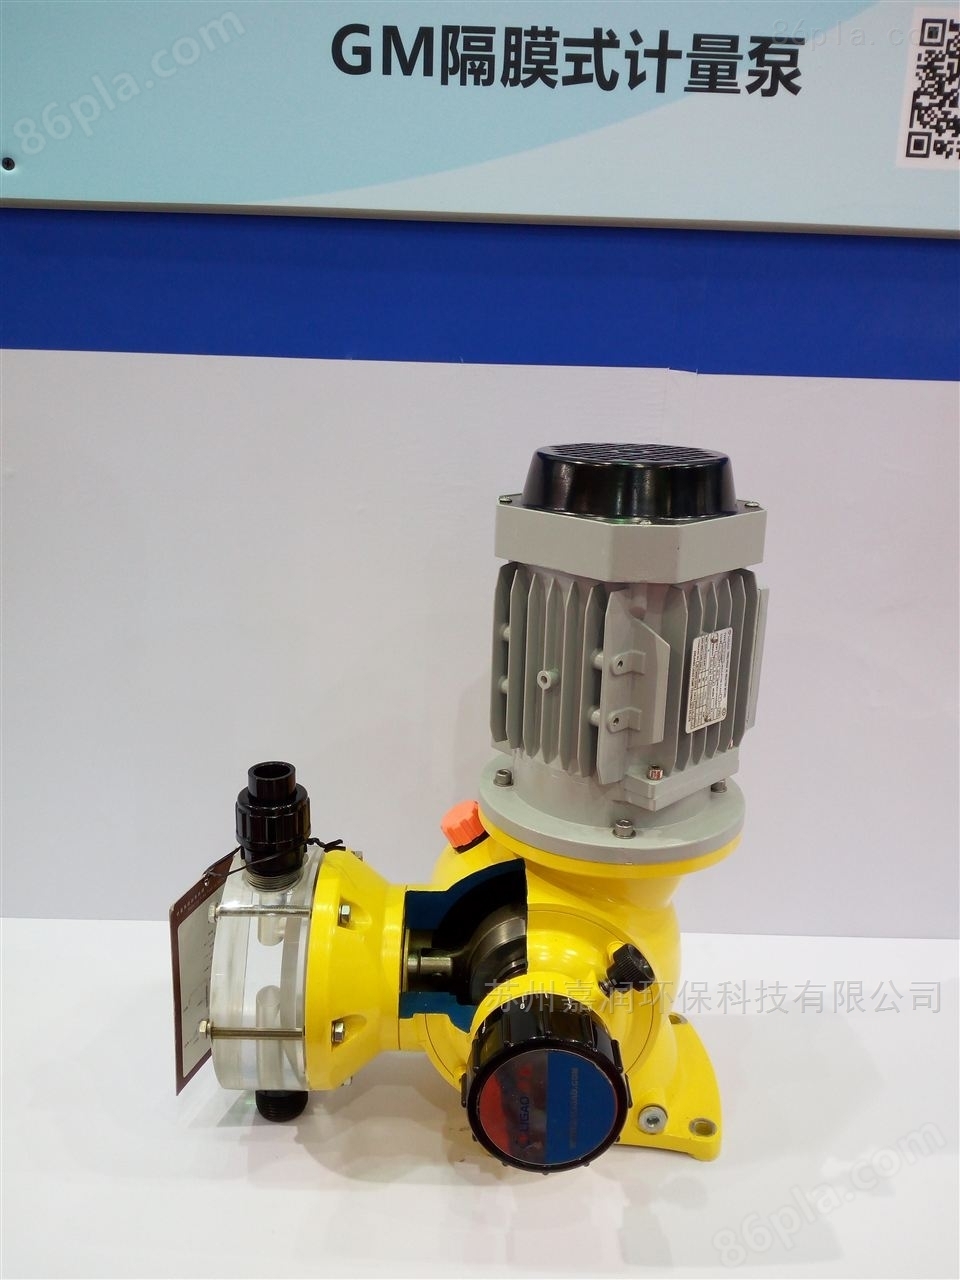 美国力高GB 1800/0.3机械隔膜计量泵选型